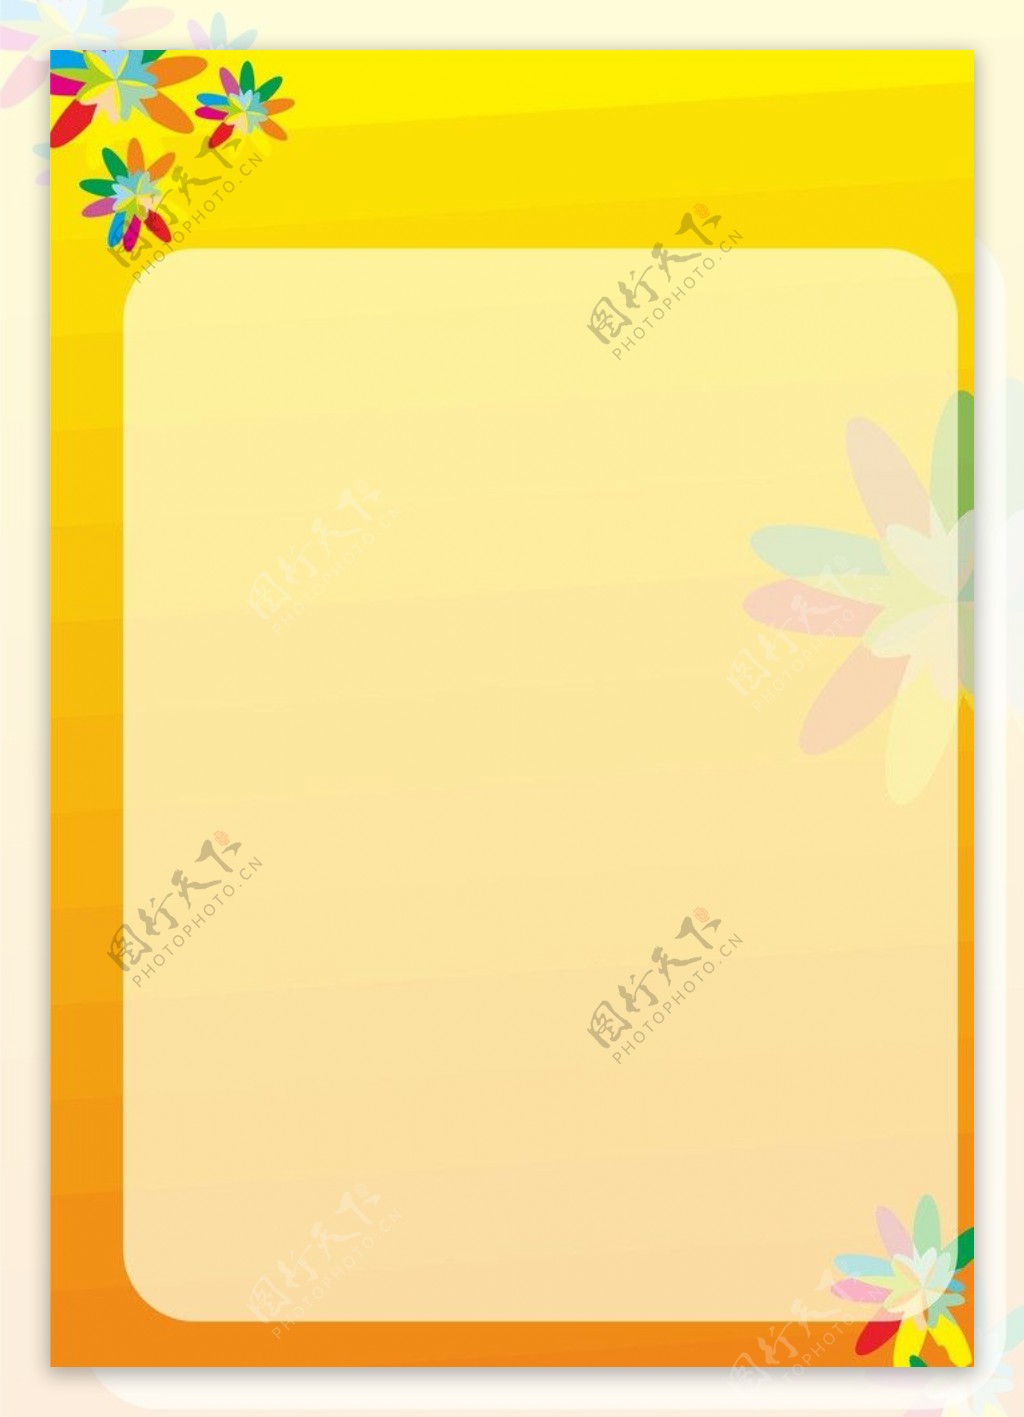 淡黄色花朵底纹背景图片